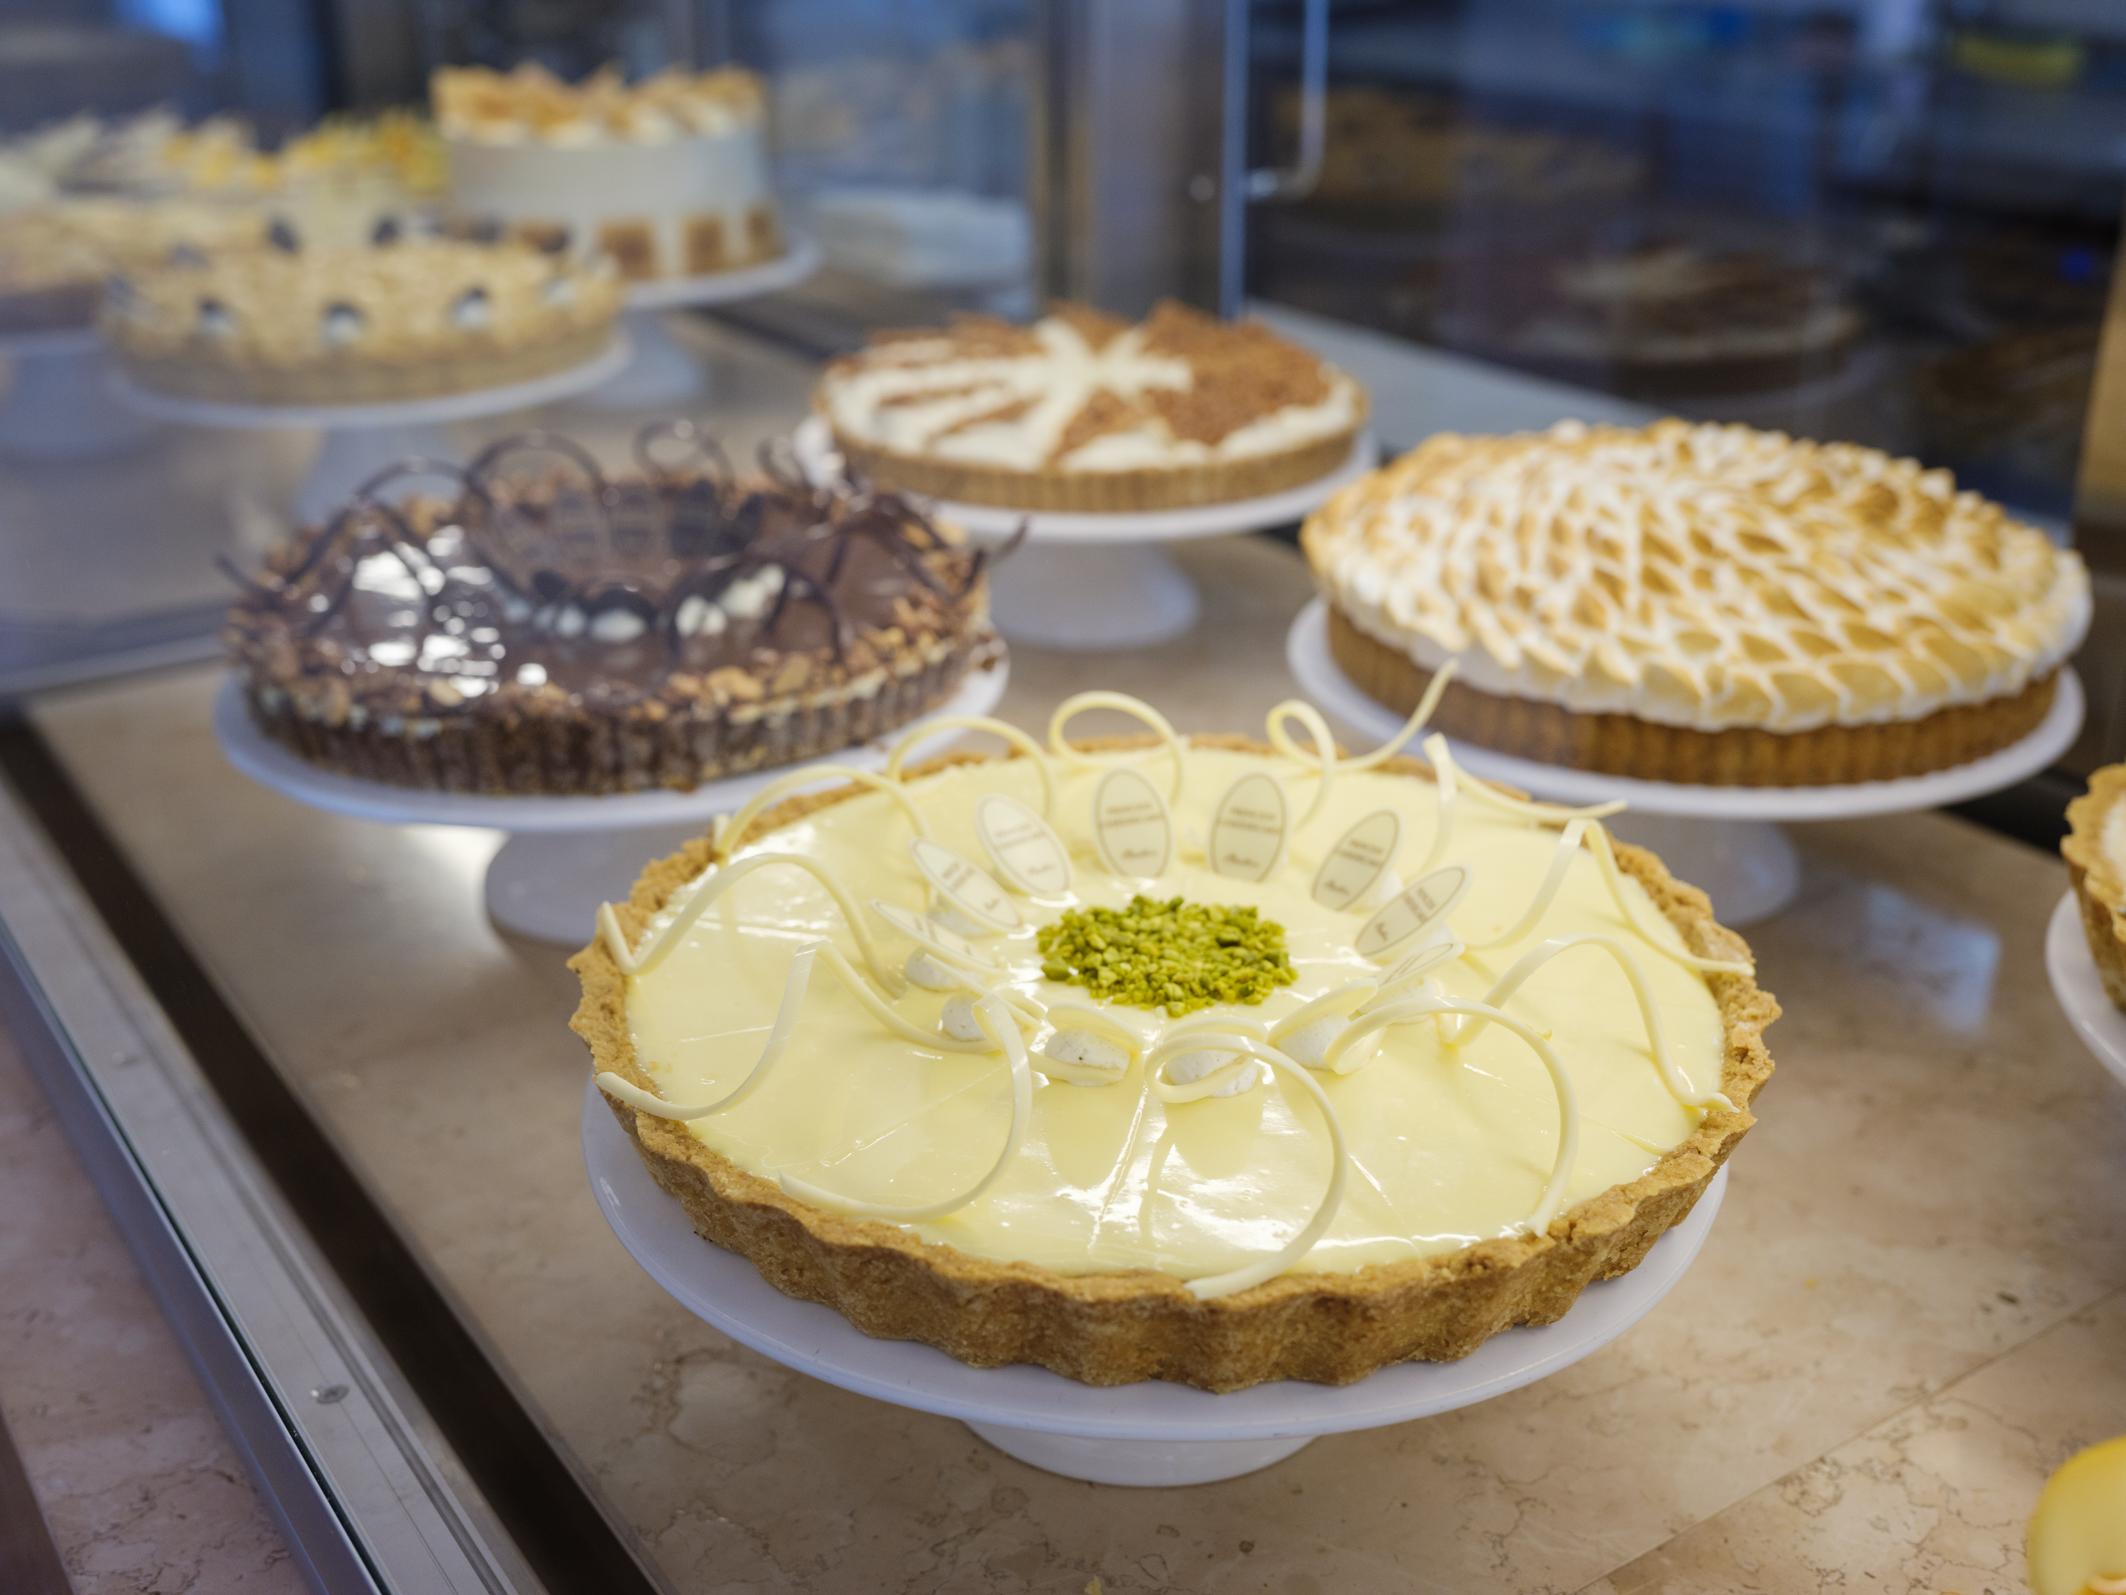 Das Princess Cheesecake ist der Käsekuchen-Spezialist unter den Cafés in Mitte.